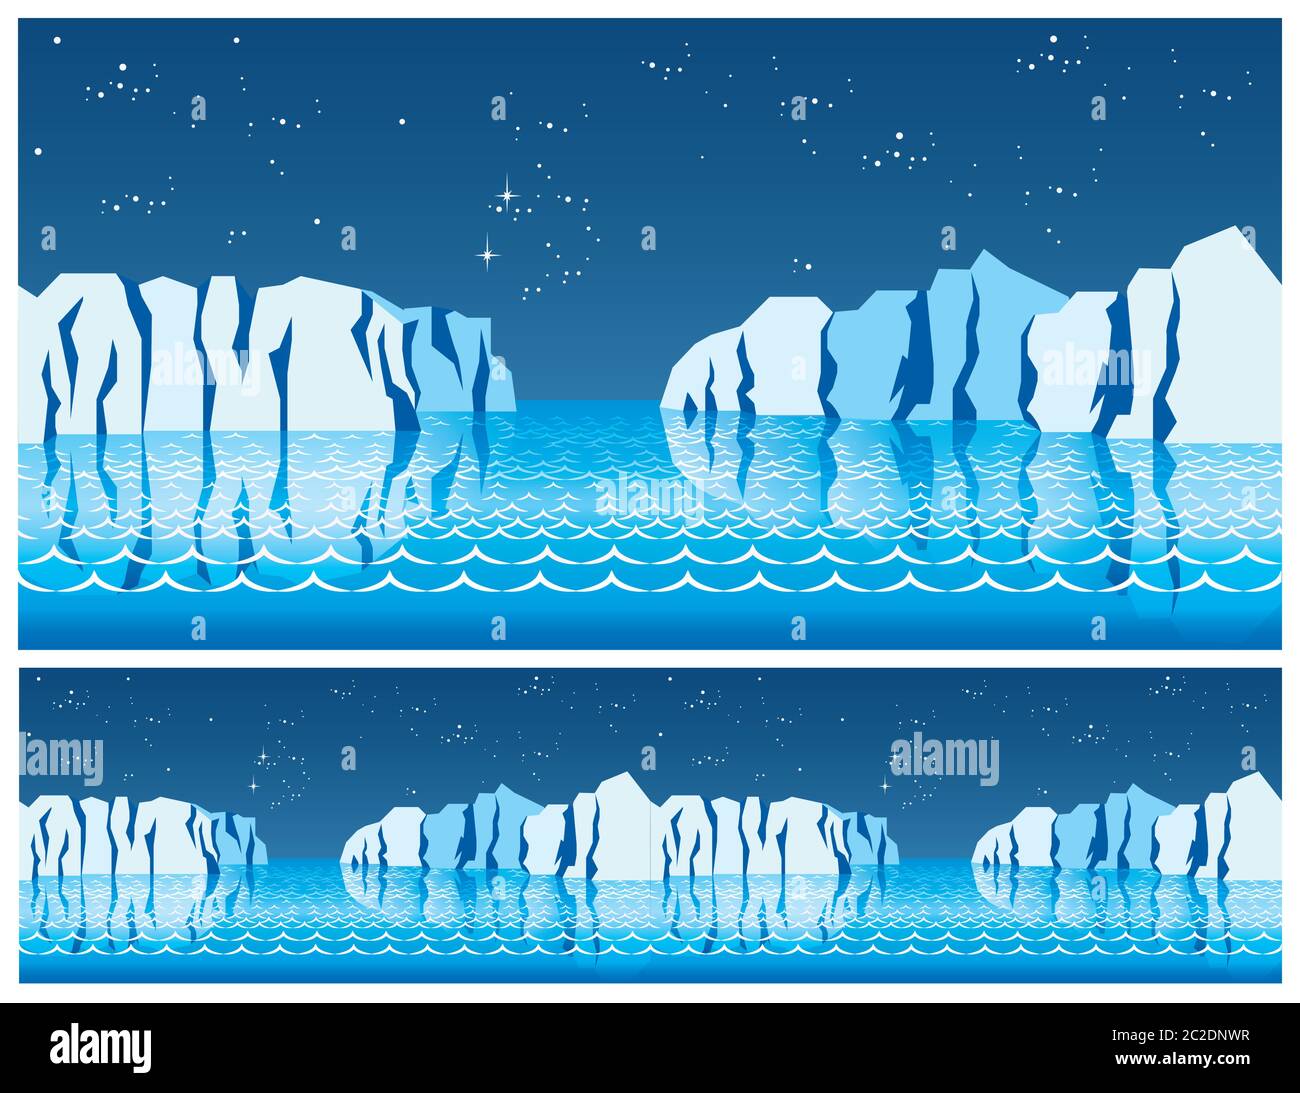 illustrazione stilizzata senza cuciture sul tema delle calotte polari del ghiaccio, dei mari del nord, del nord, delle notti polari Illustrazione Vettoriale